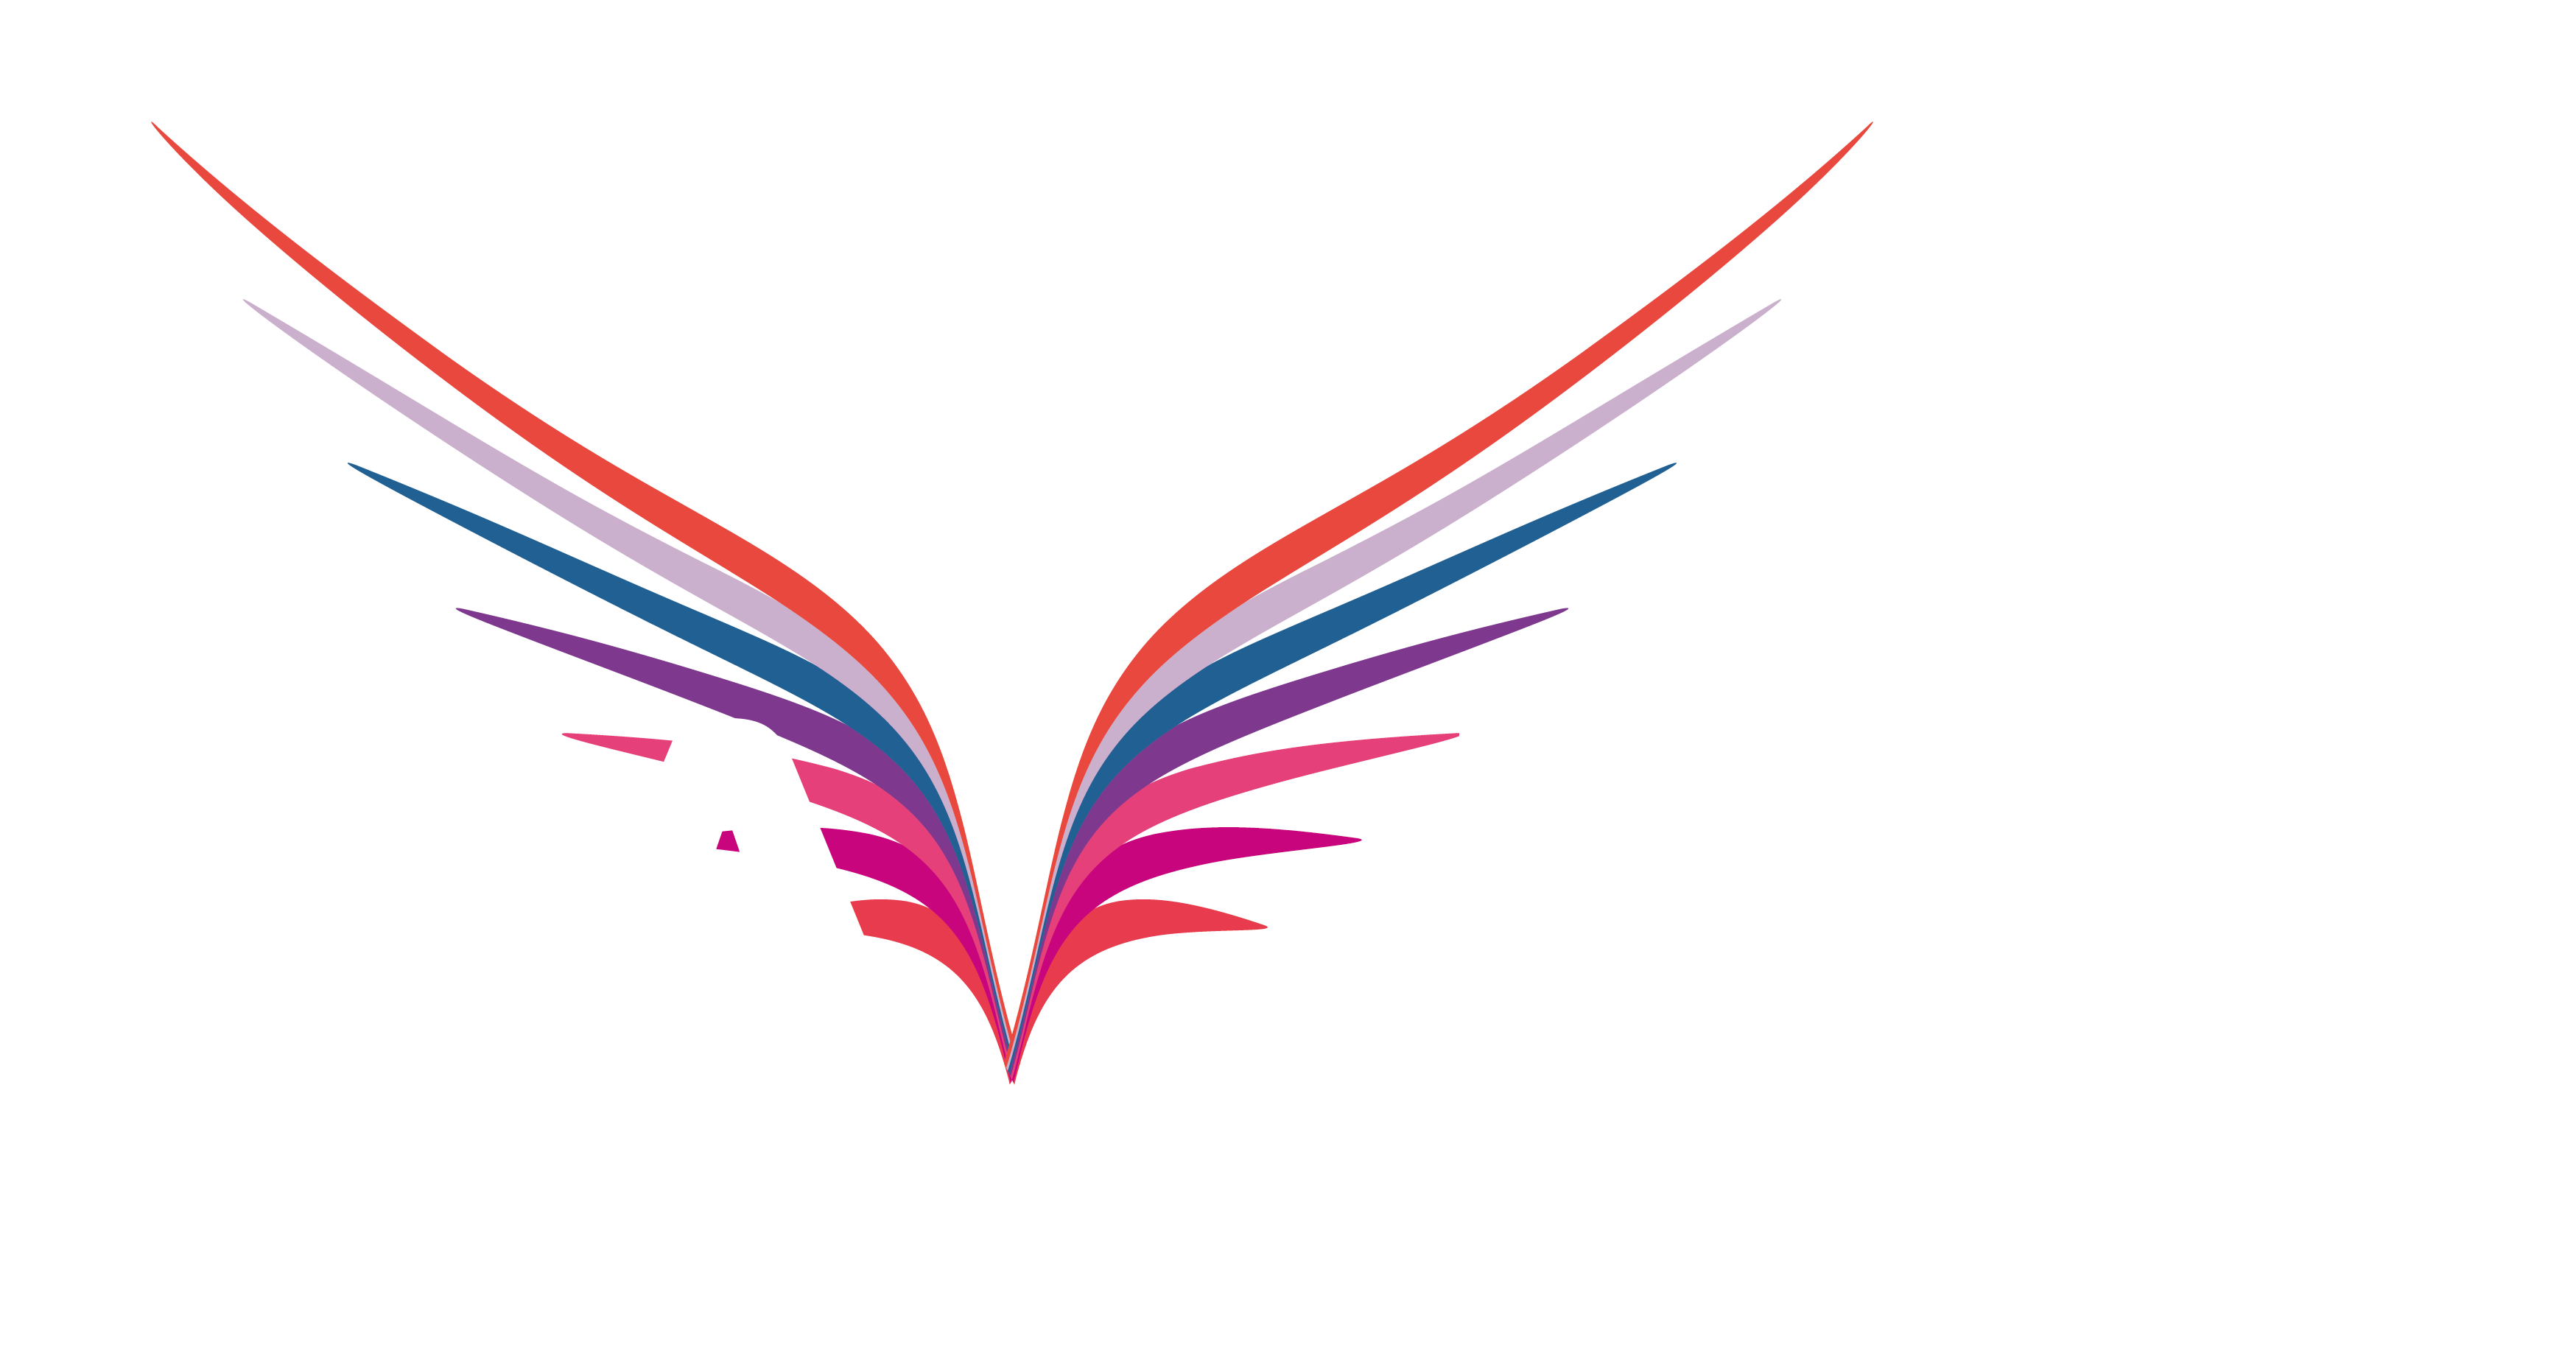 Maverick Event Show Crew